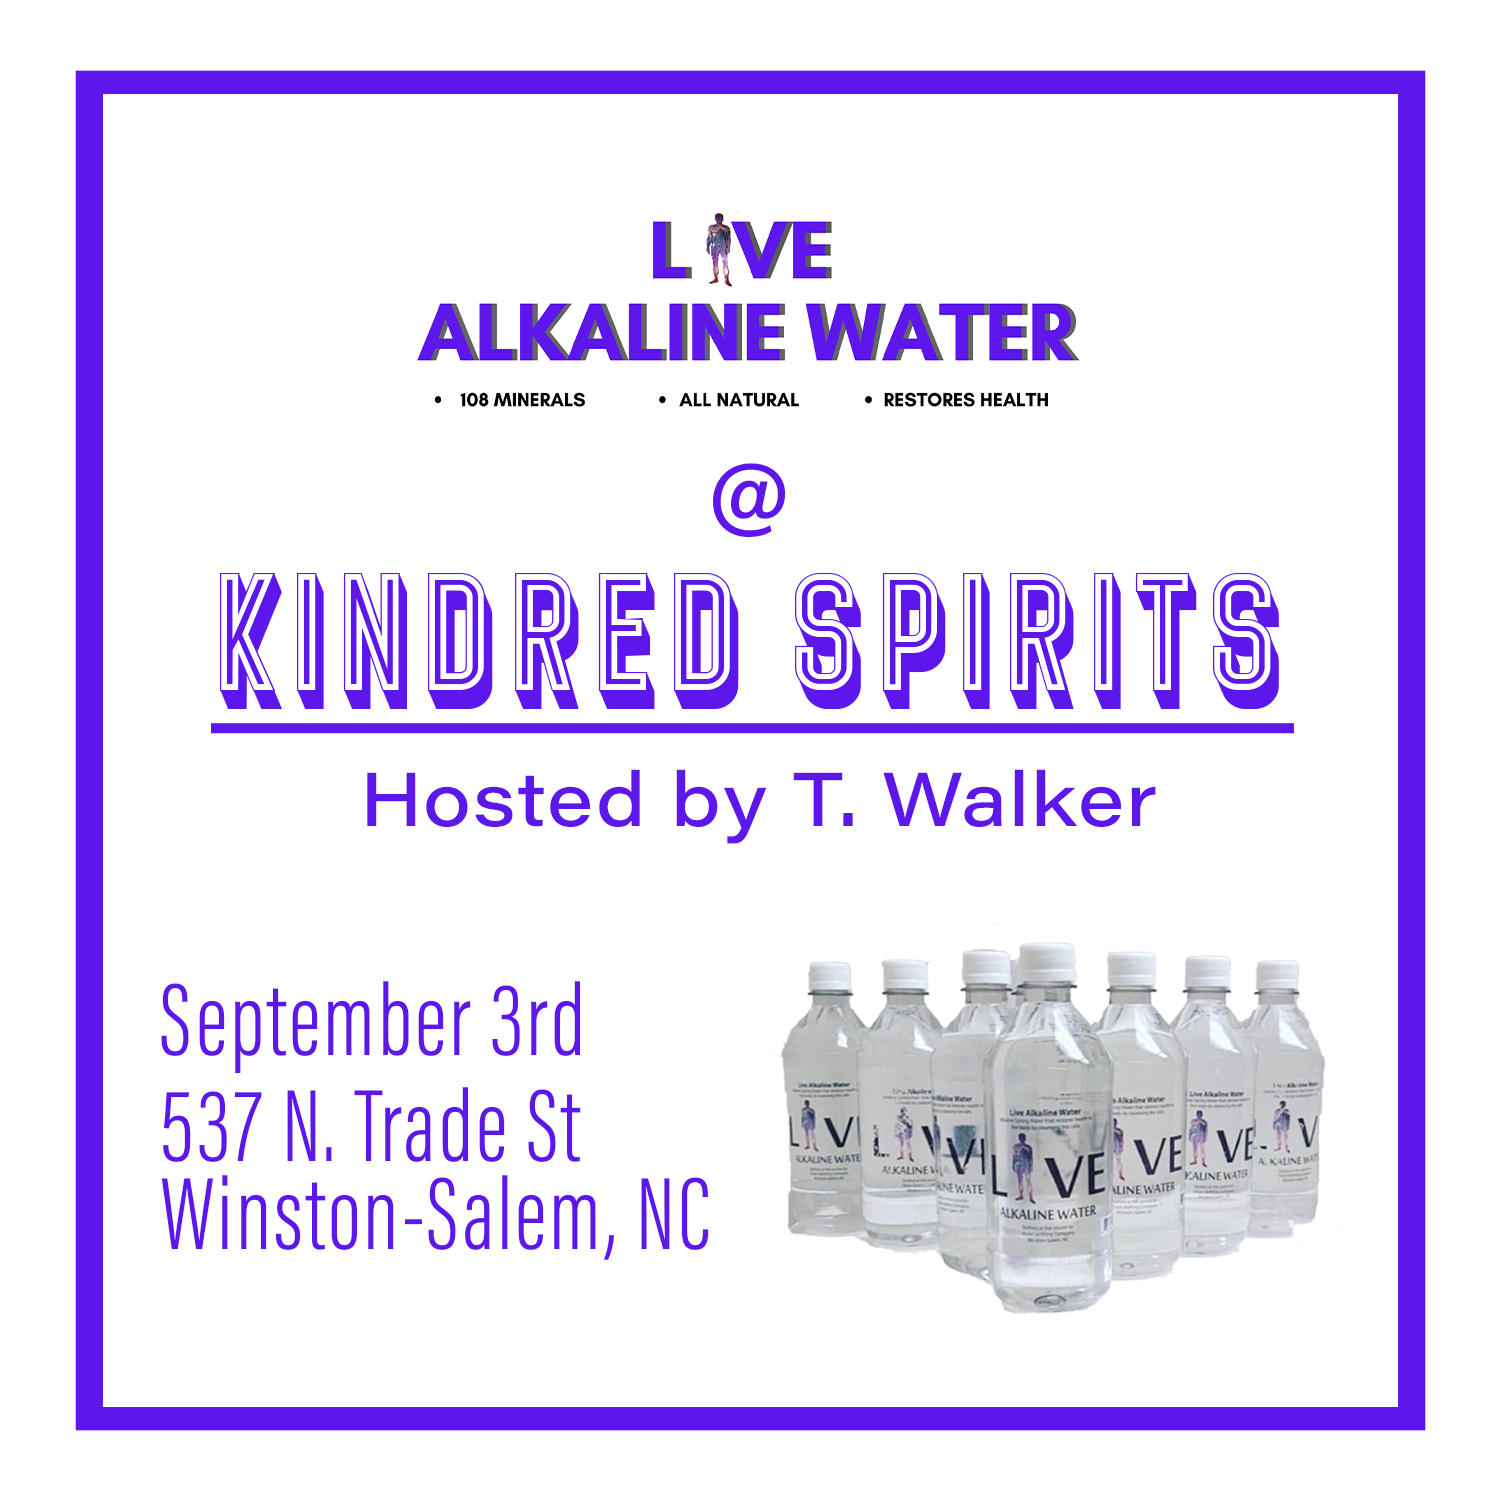 Live Alkaline-Kindred Spirits